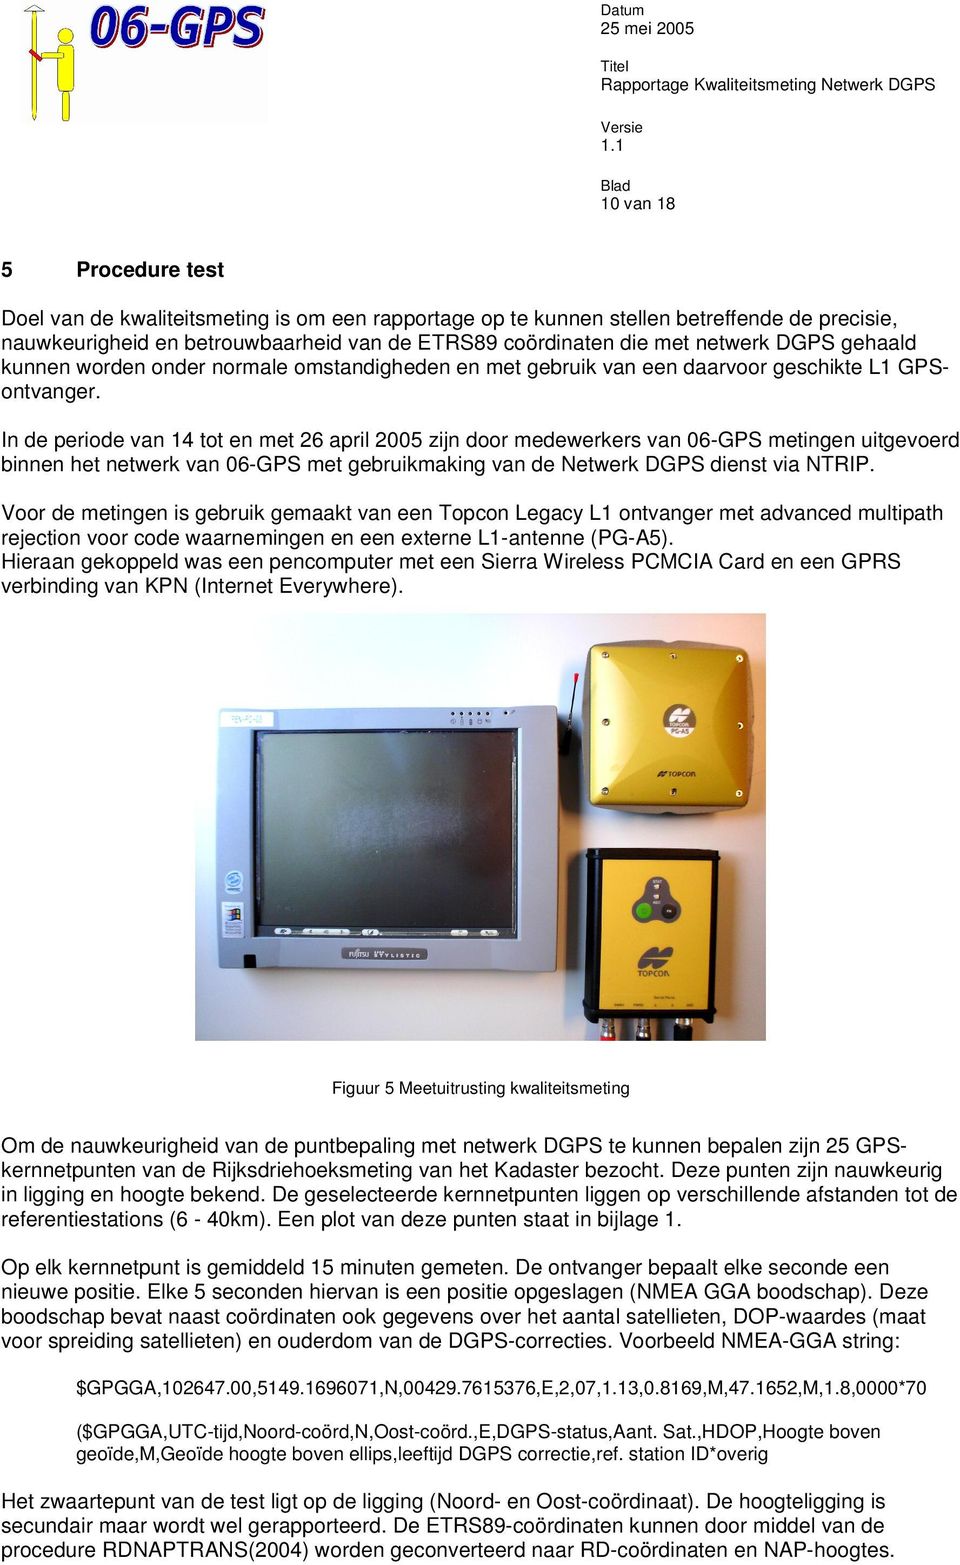 In de periode van 14 tot en met 26 april 2005 zijn door medewerkers van 06-GPS metingen uitgevoerd binnen het netwerk van 06-GPS met gebruikmaking van de Netwerk DGPS dienst via NTRIP.